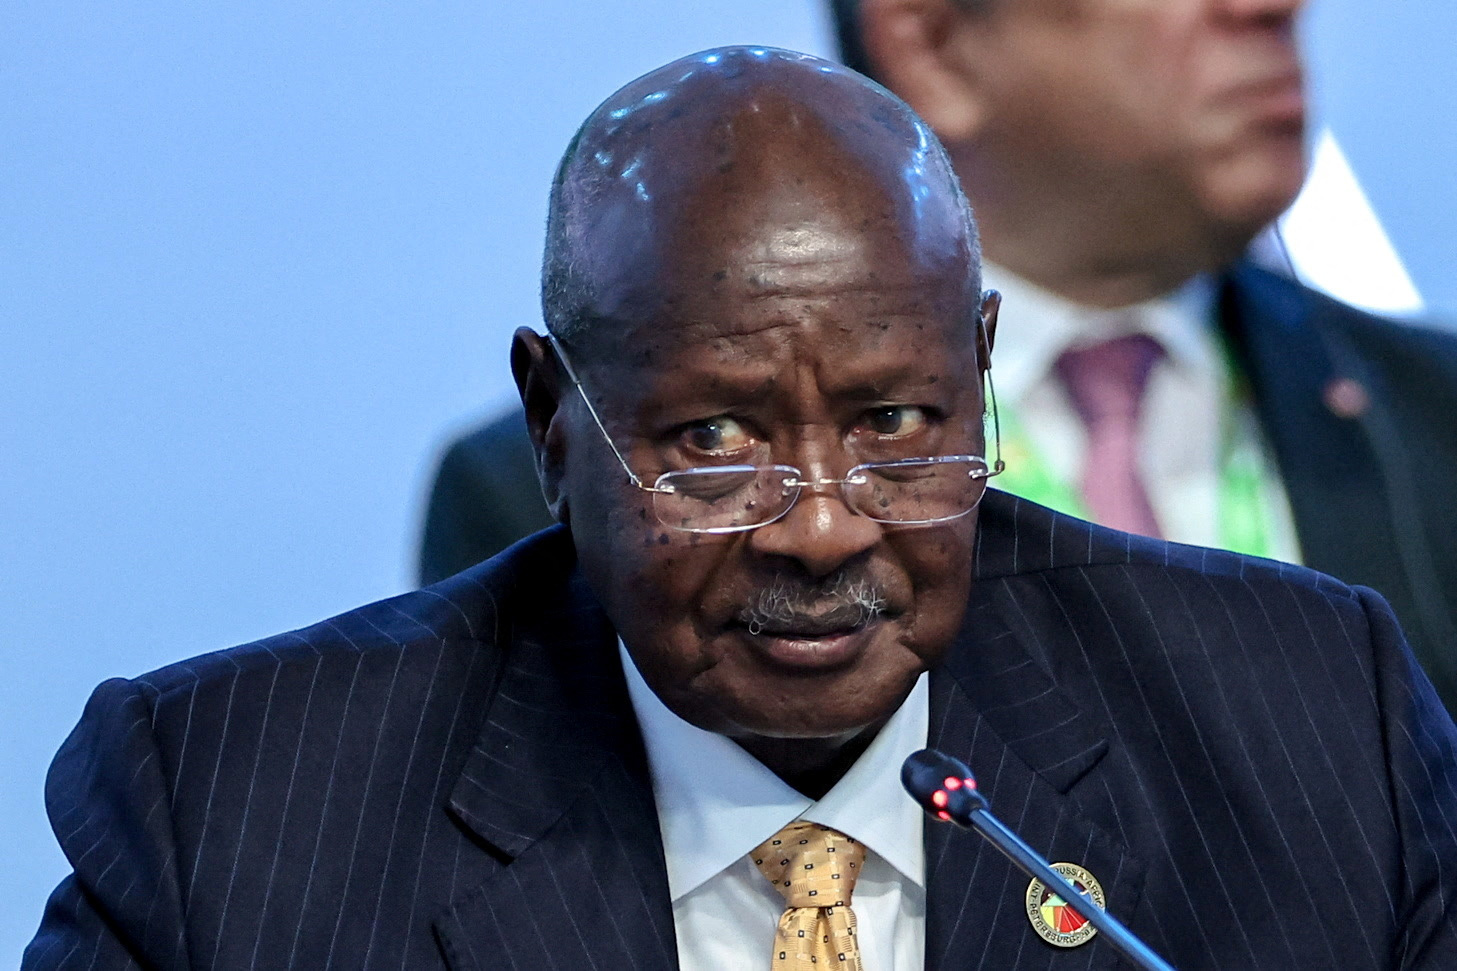 Uganda president defiant after World Financial institution suspends funding over LGBT regulation